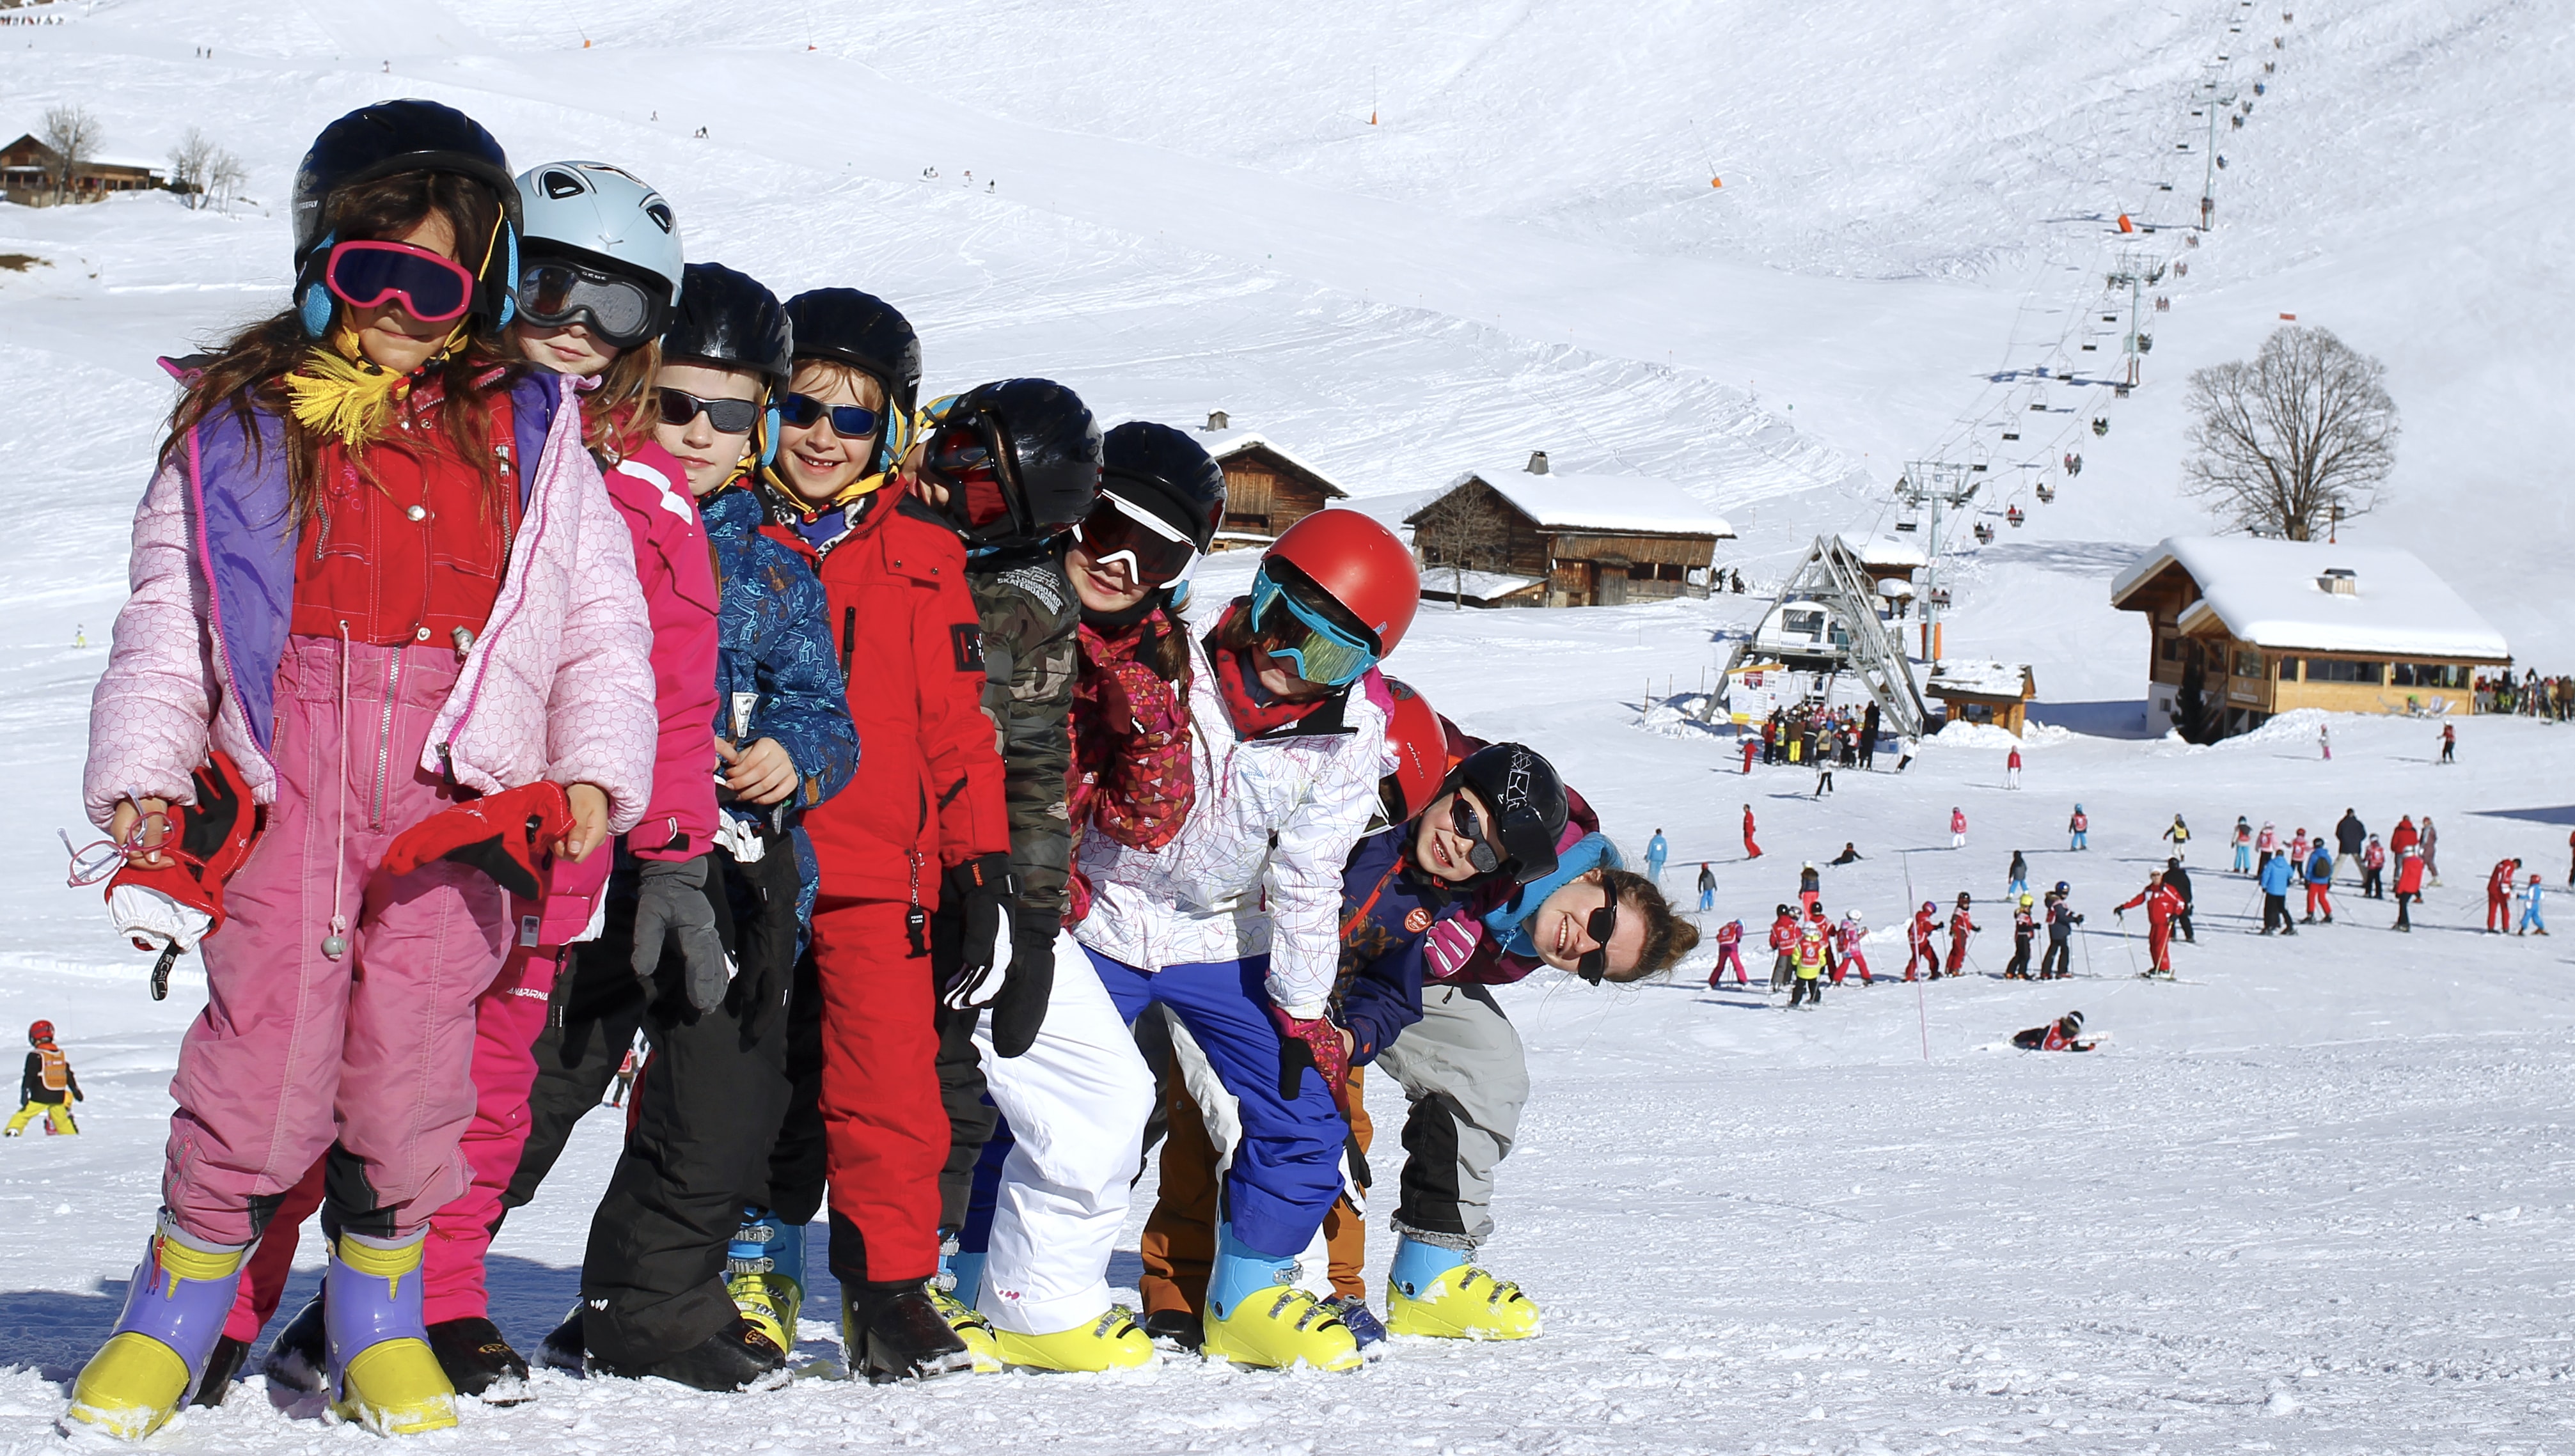 Premier séjour au ski avec enfants : nos conseils